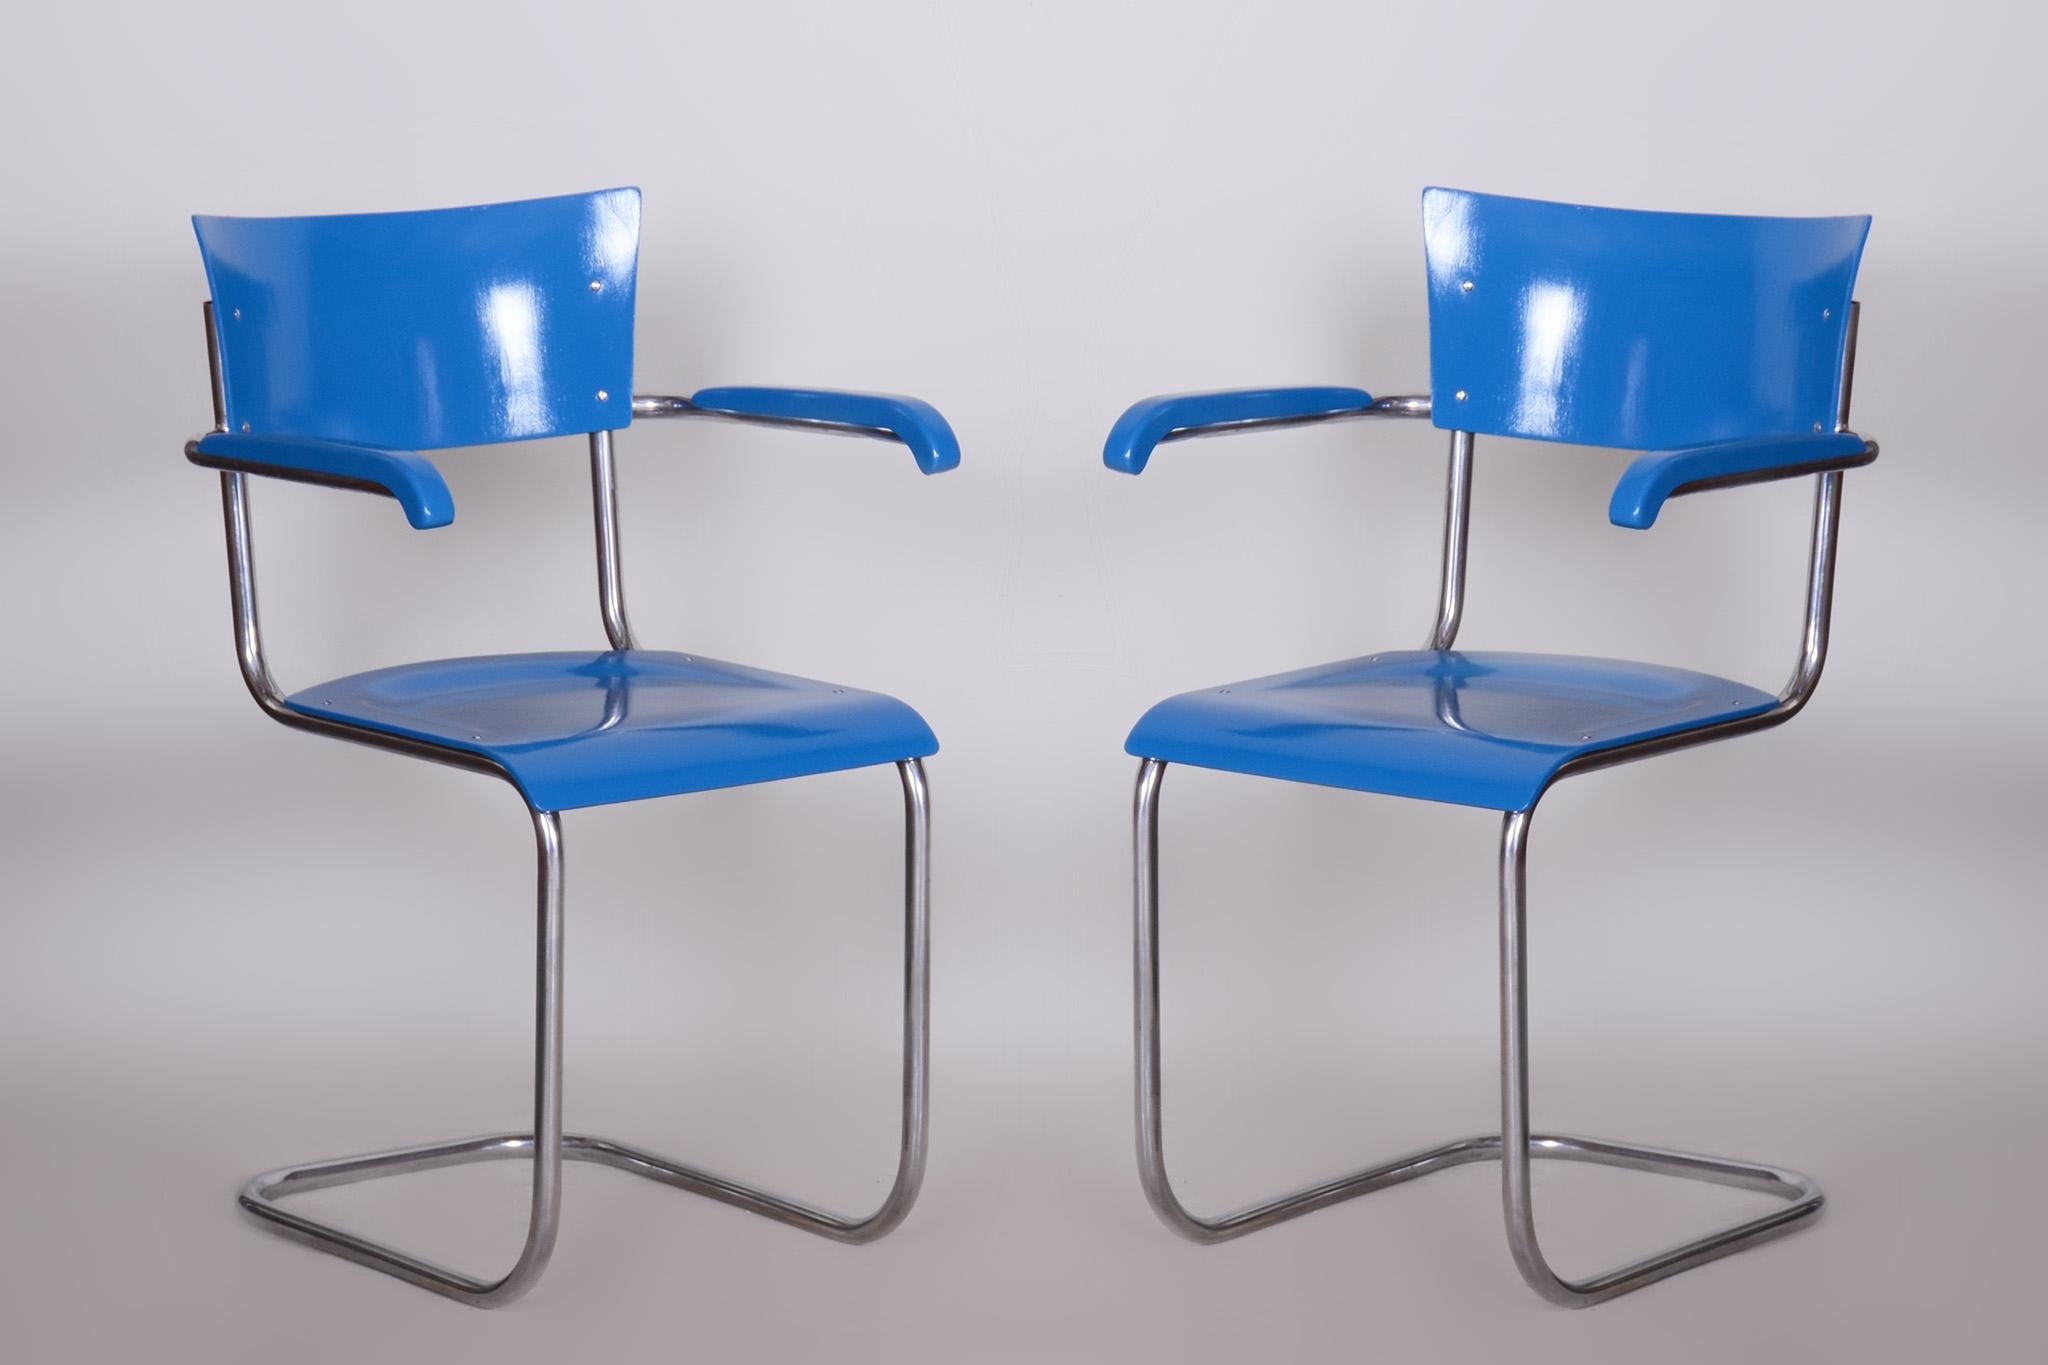 Ensemble de quatre fauteuils en hêtre restauré bleu par Mart Stam.

Style : Bauhaus
Designer : Mart Stam
Période : 1930-1939
Source : Allemagne
Matériau : Acier chromé, contreplaqué de hêtre

Notre équipe professionnelle de remise à neuf en